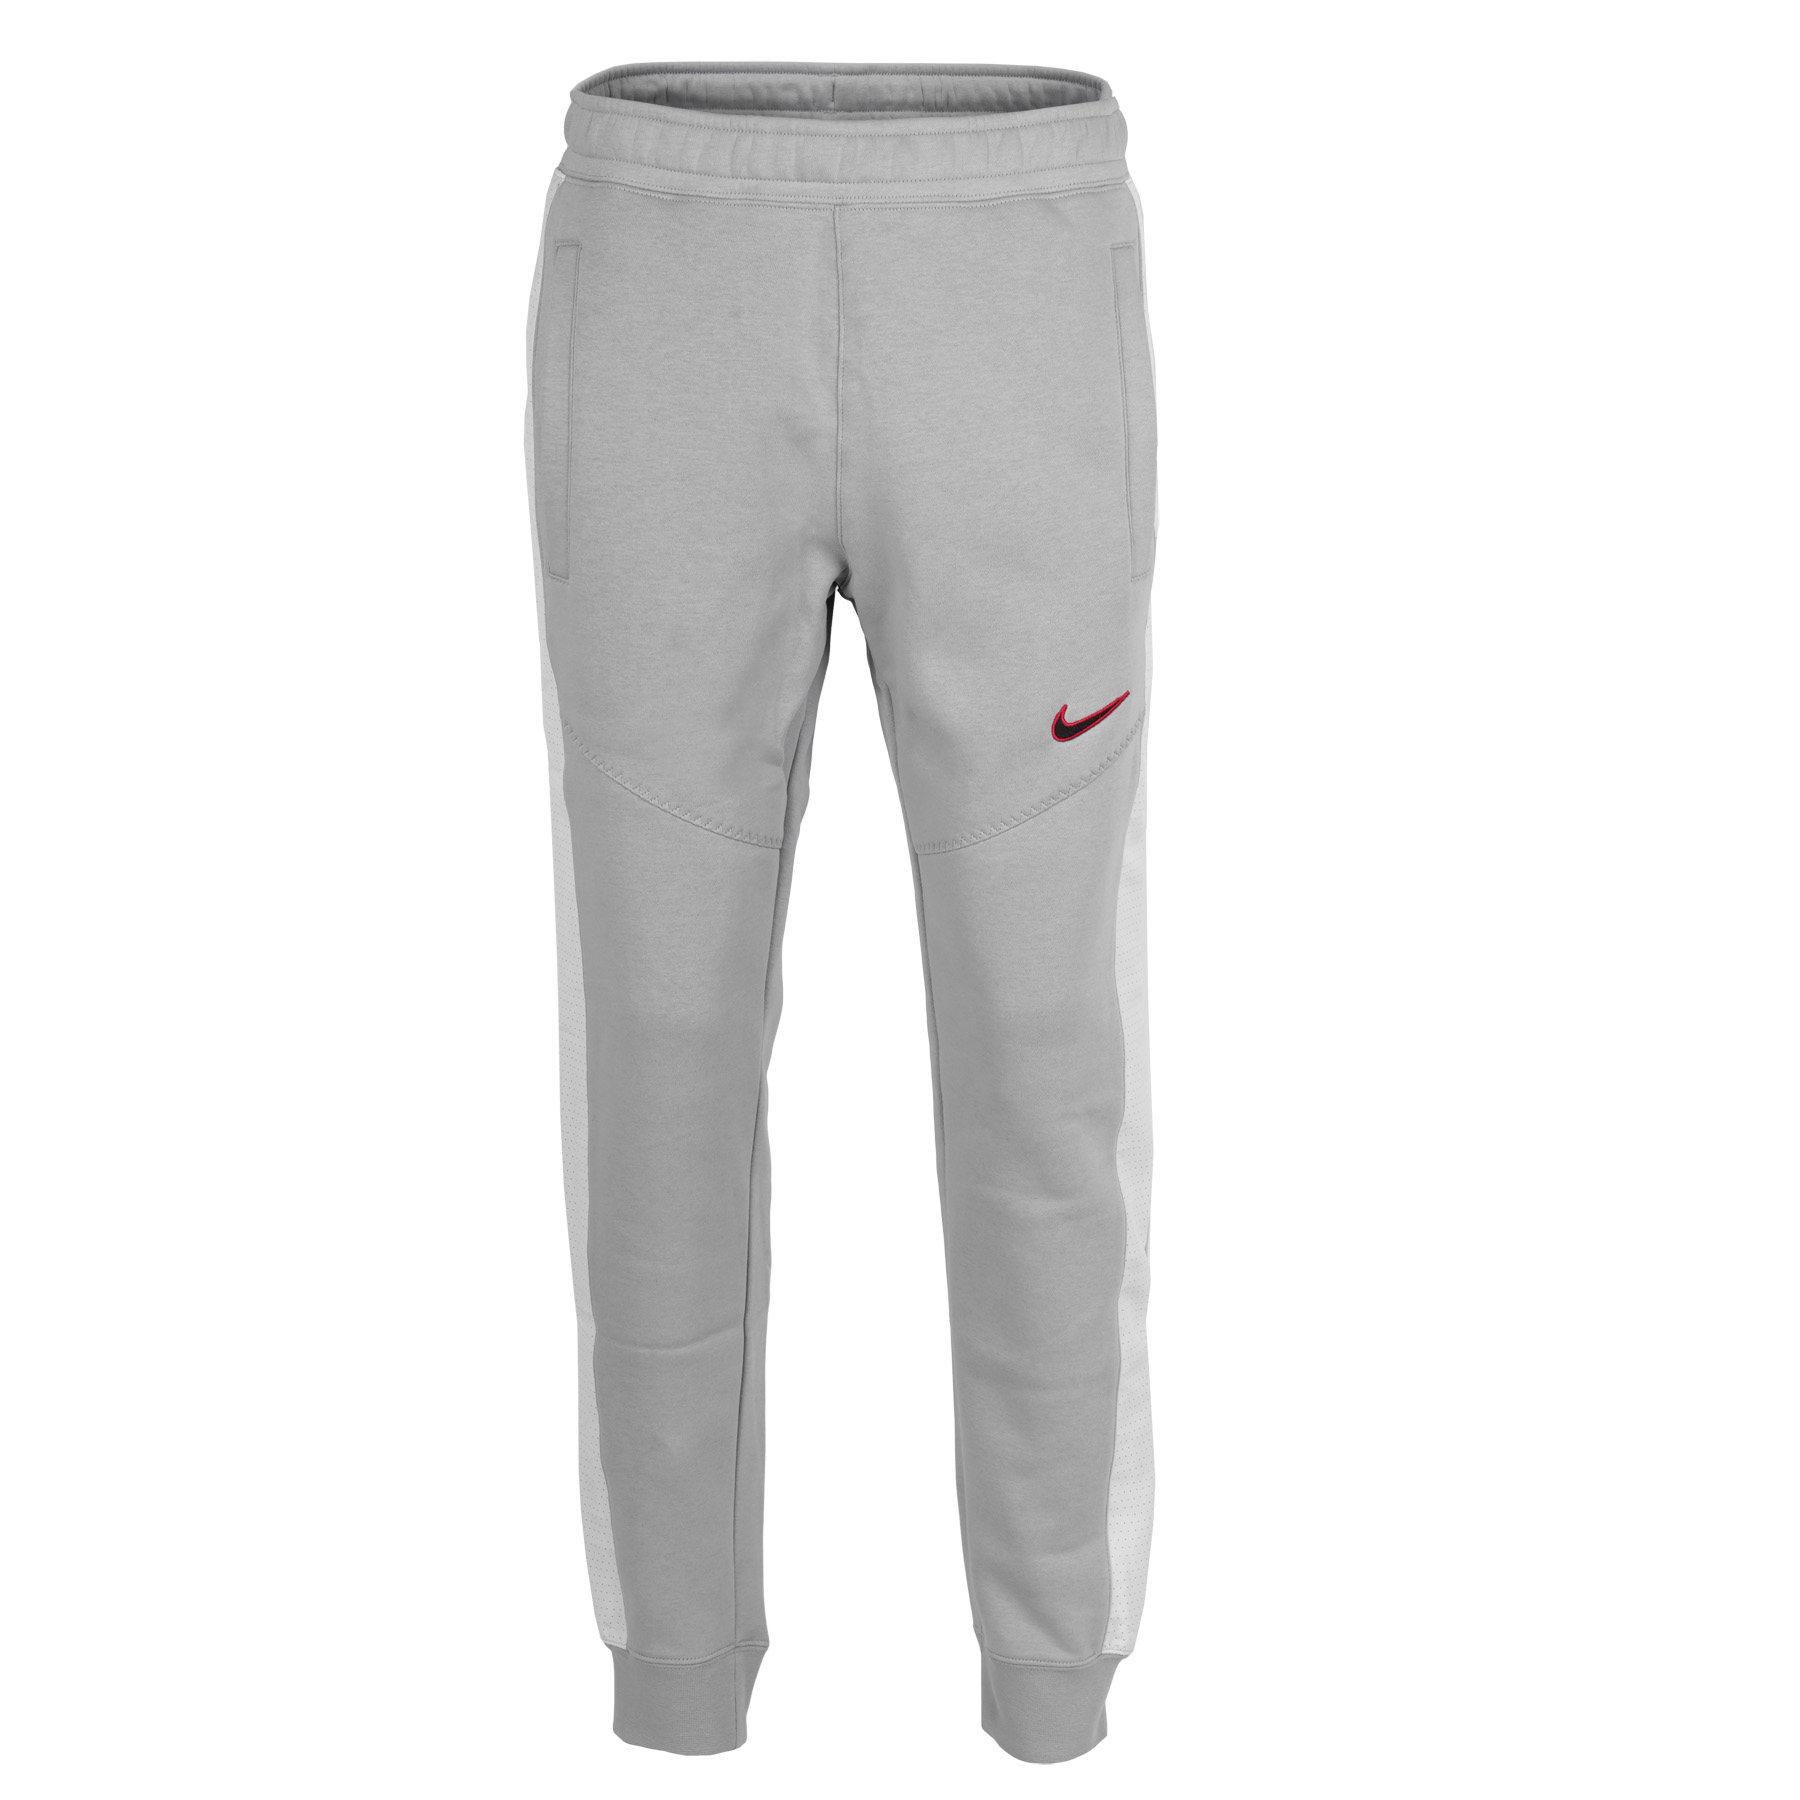 Productfoto van Nike Sportswear Fleece Joggingbroek Heren - wolf grey FN0246-012